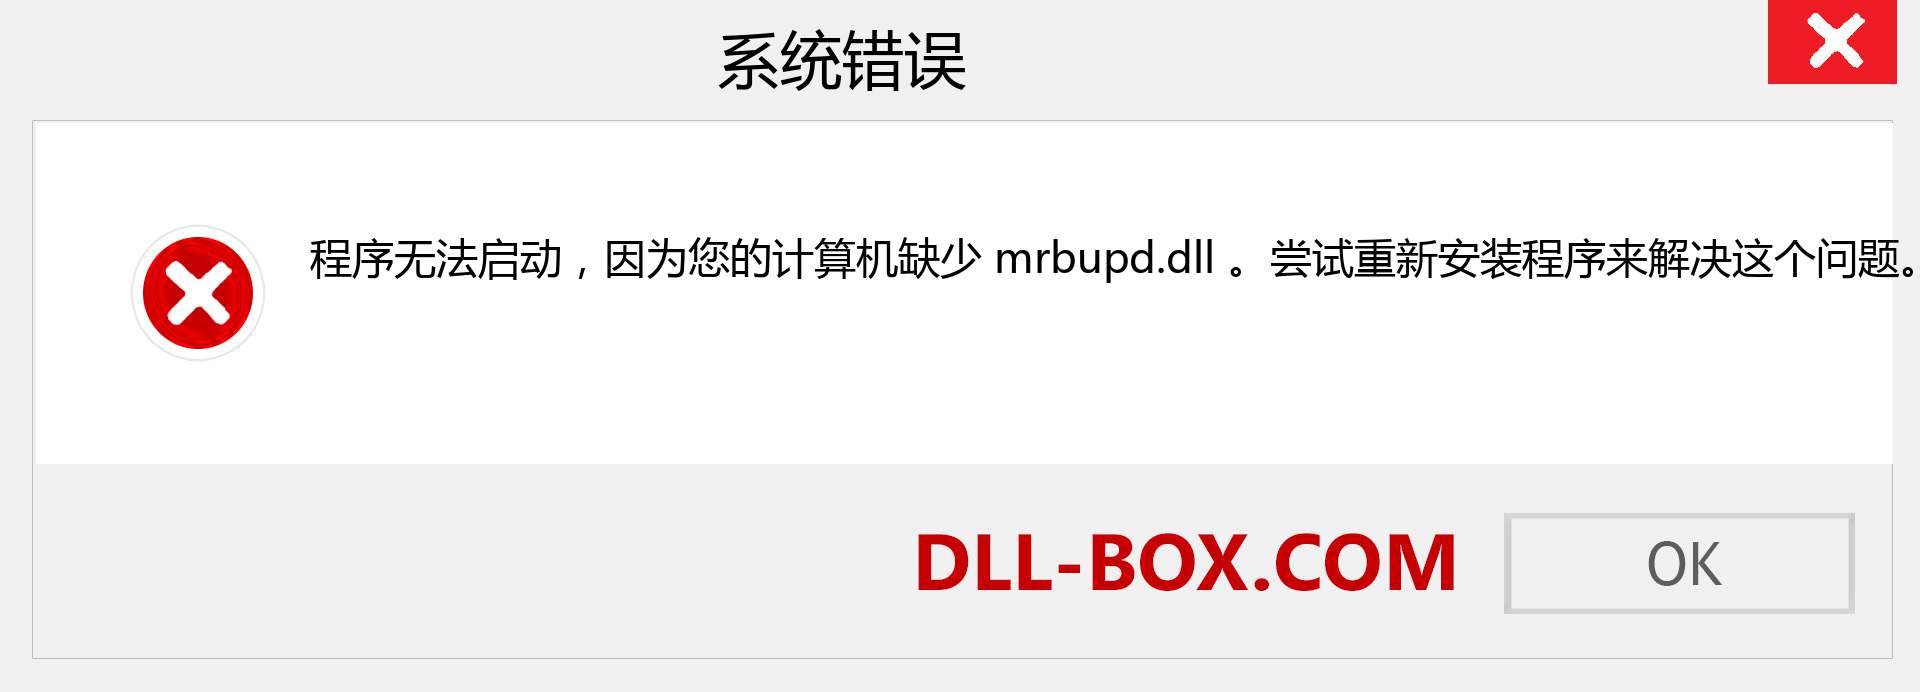 mrbupd.dll 文件丢失？。 适用于 Windows 7、8、10 的下载 - 修复 Windows、照片、图像上的 mrbupd dll 丢失错误